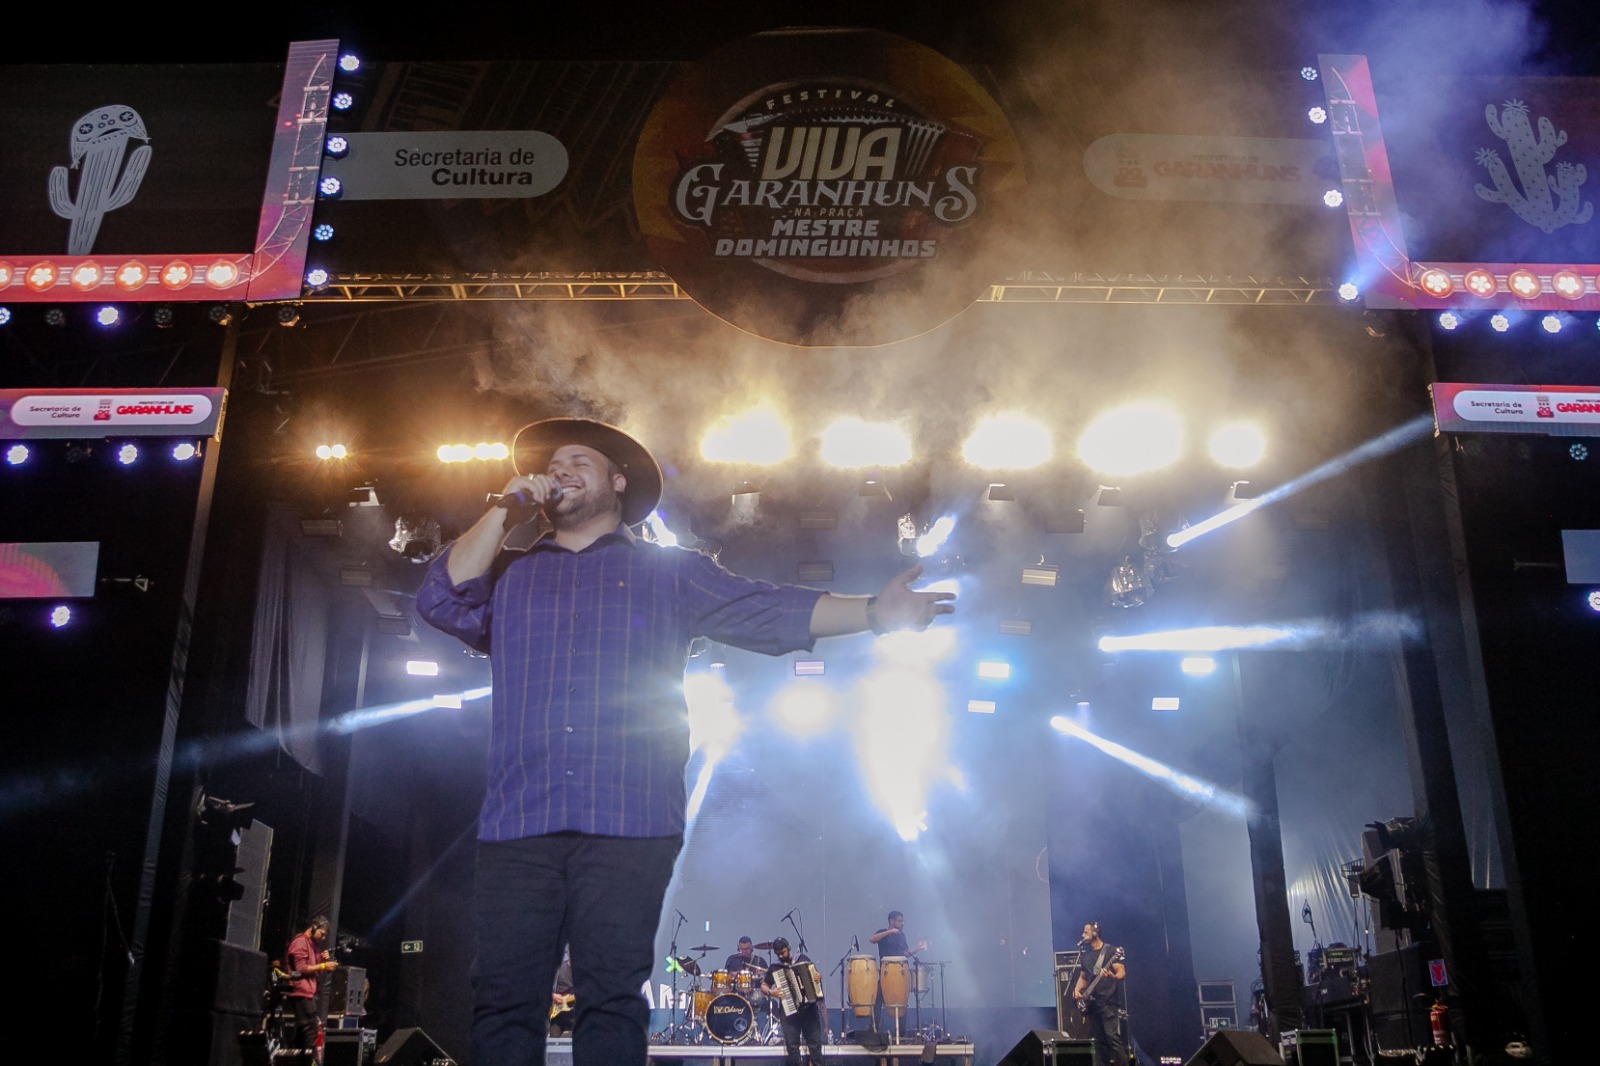  Festival Viva Garanhuns: Uma Noite de Emoção e Música com Grandes Nomes do Forró